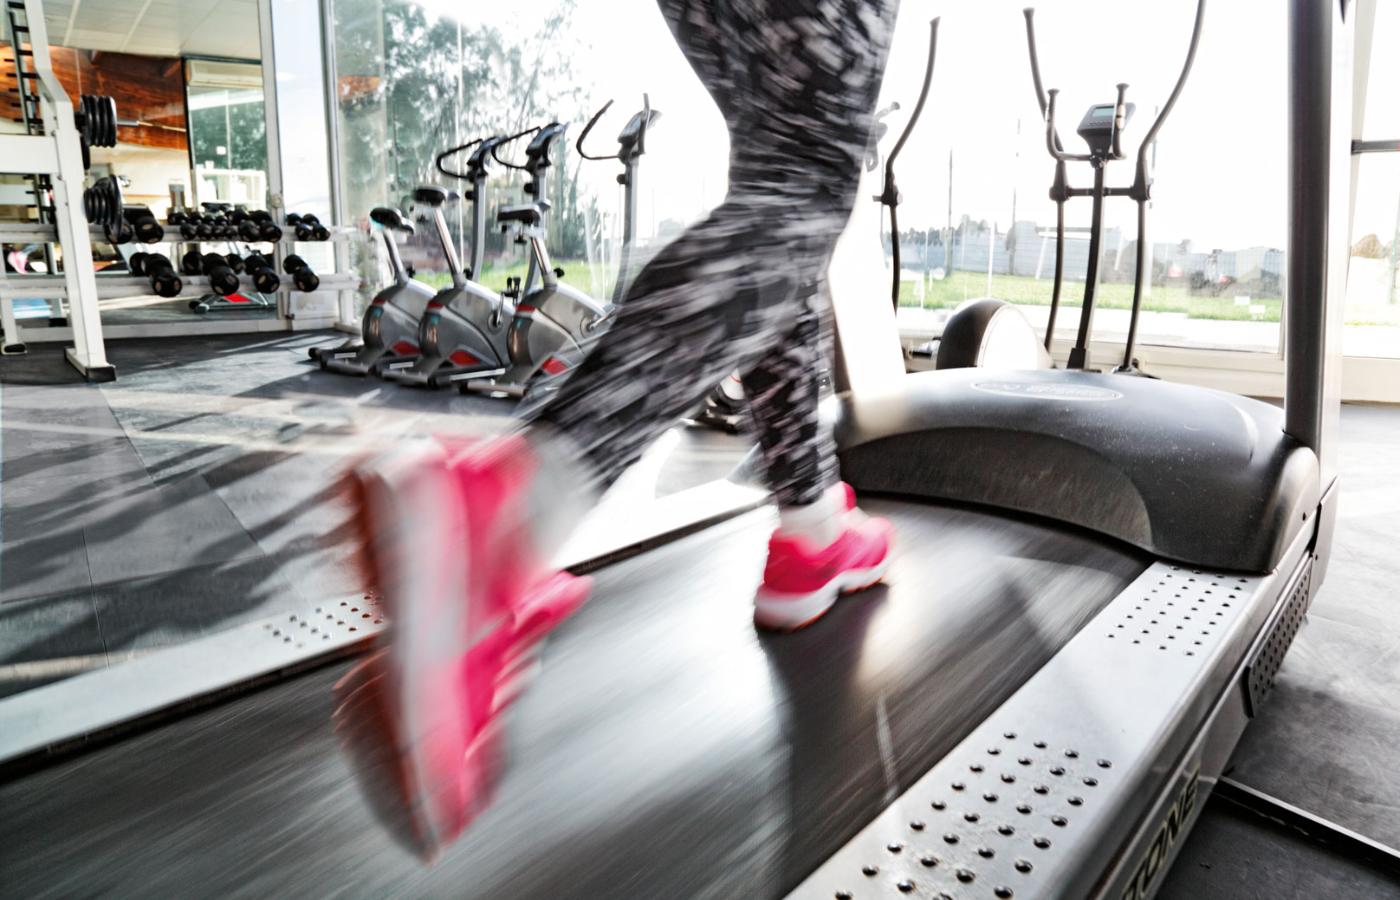 Bieganie jest najprostszą, a zarazem najbardziej skondensowaną formą aktywności fizycznej zalecaną przez lekarzy.